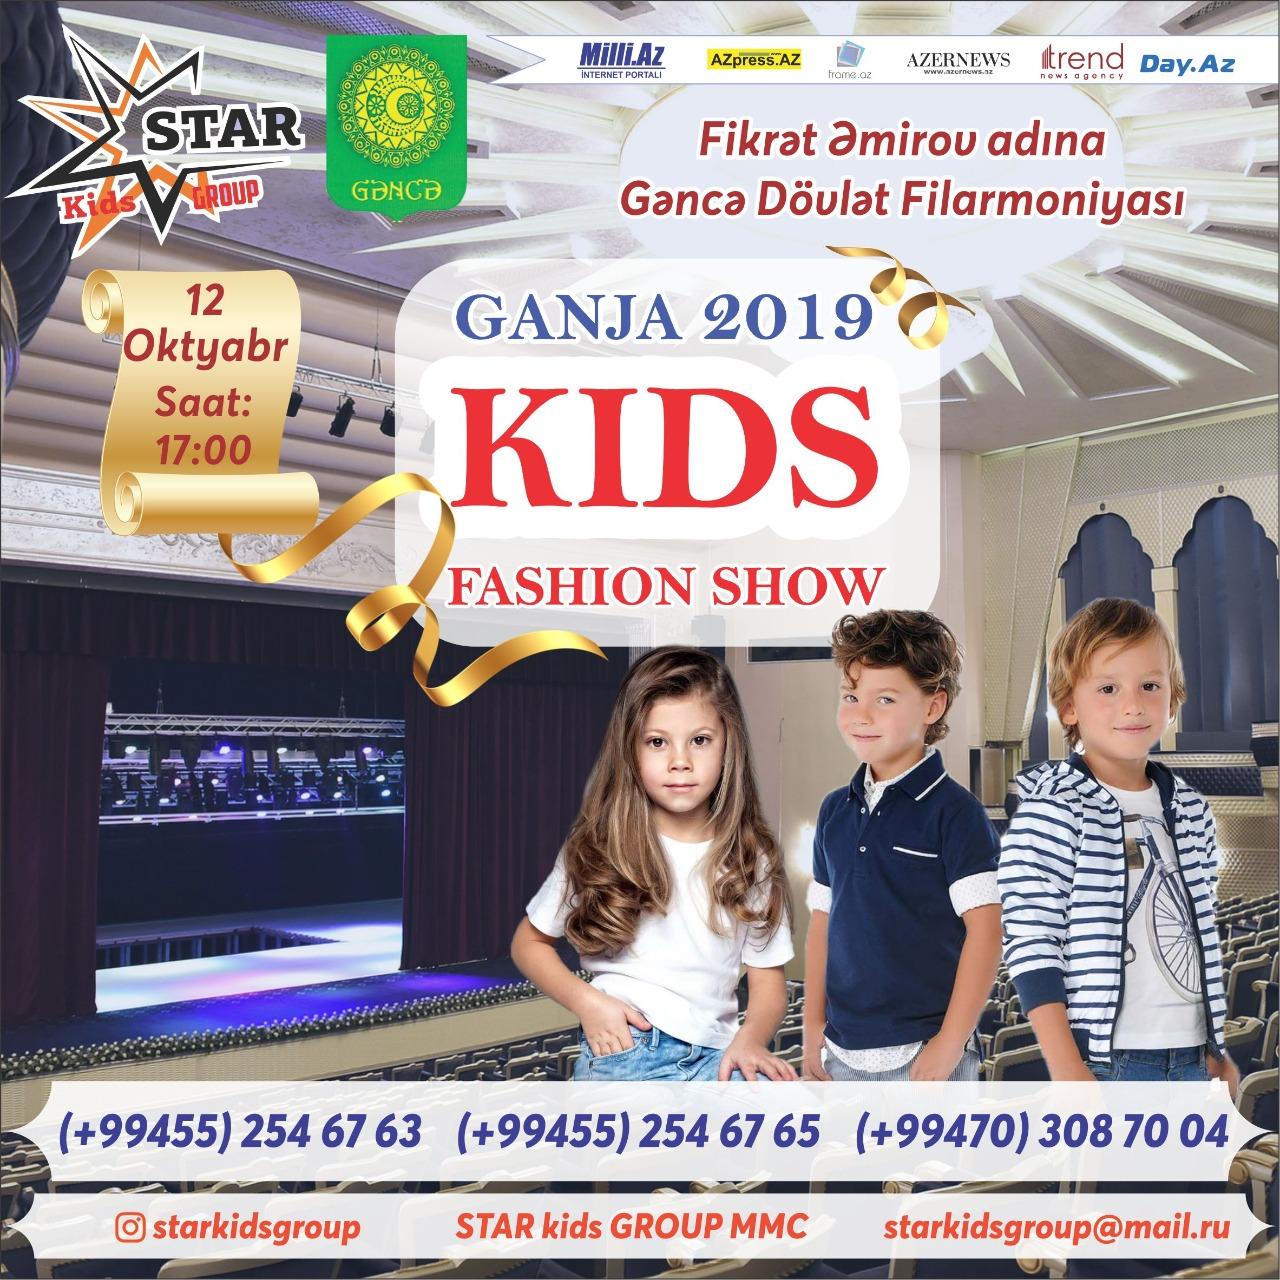 В Гяндже впервые пройдет День детской моды Kids Fashion 2019 (ВИДЕО)